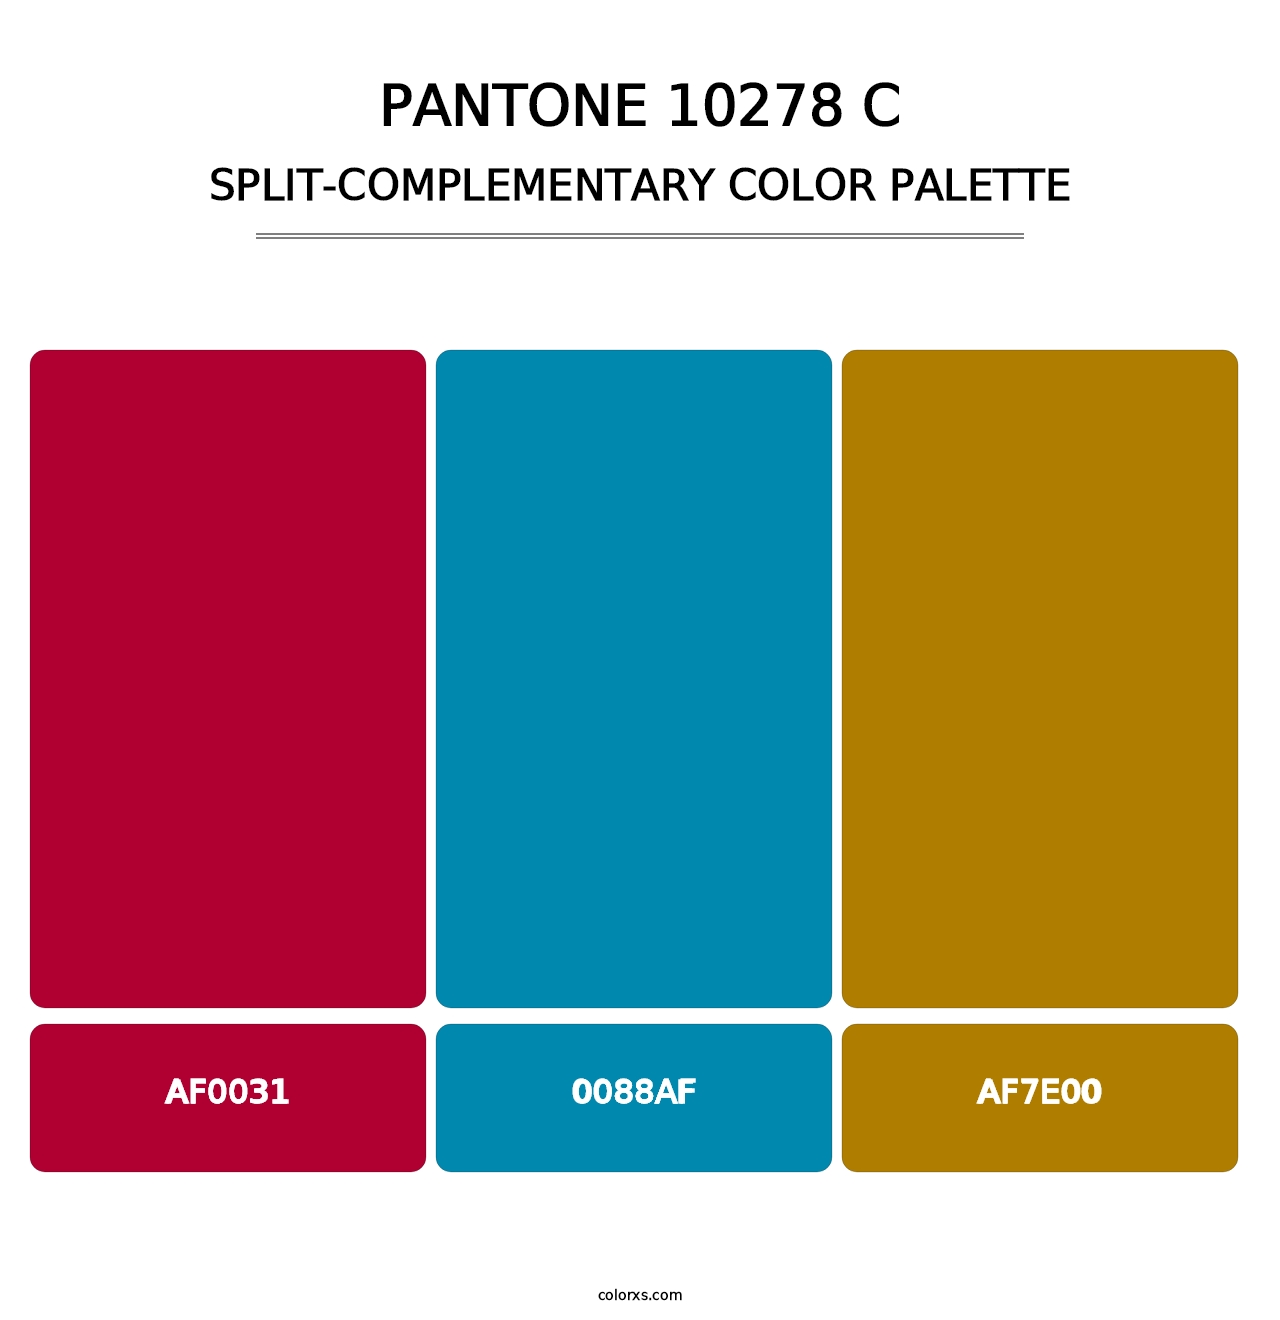 PANTONE 10278 C - Split-Complementary Color Palette